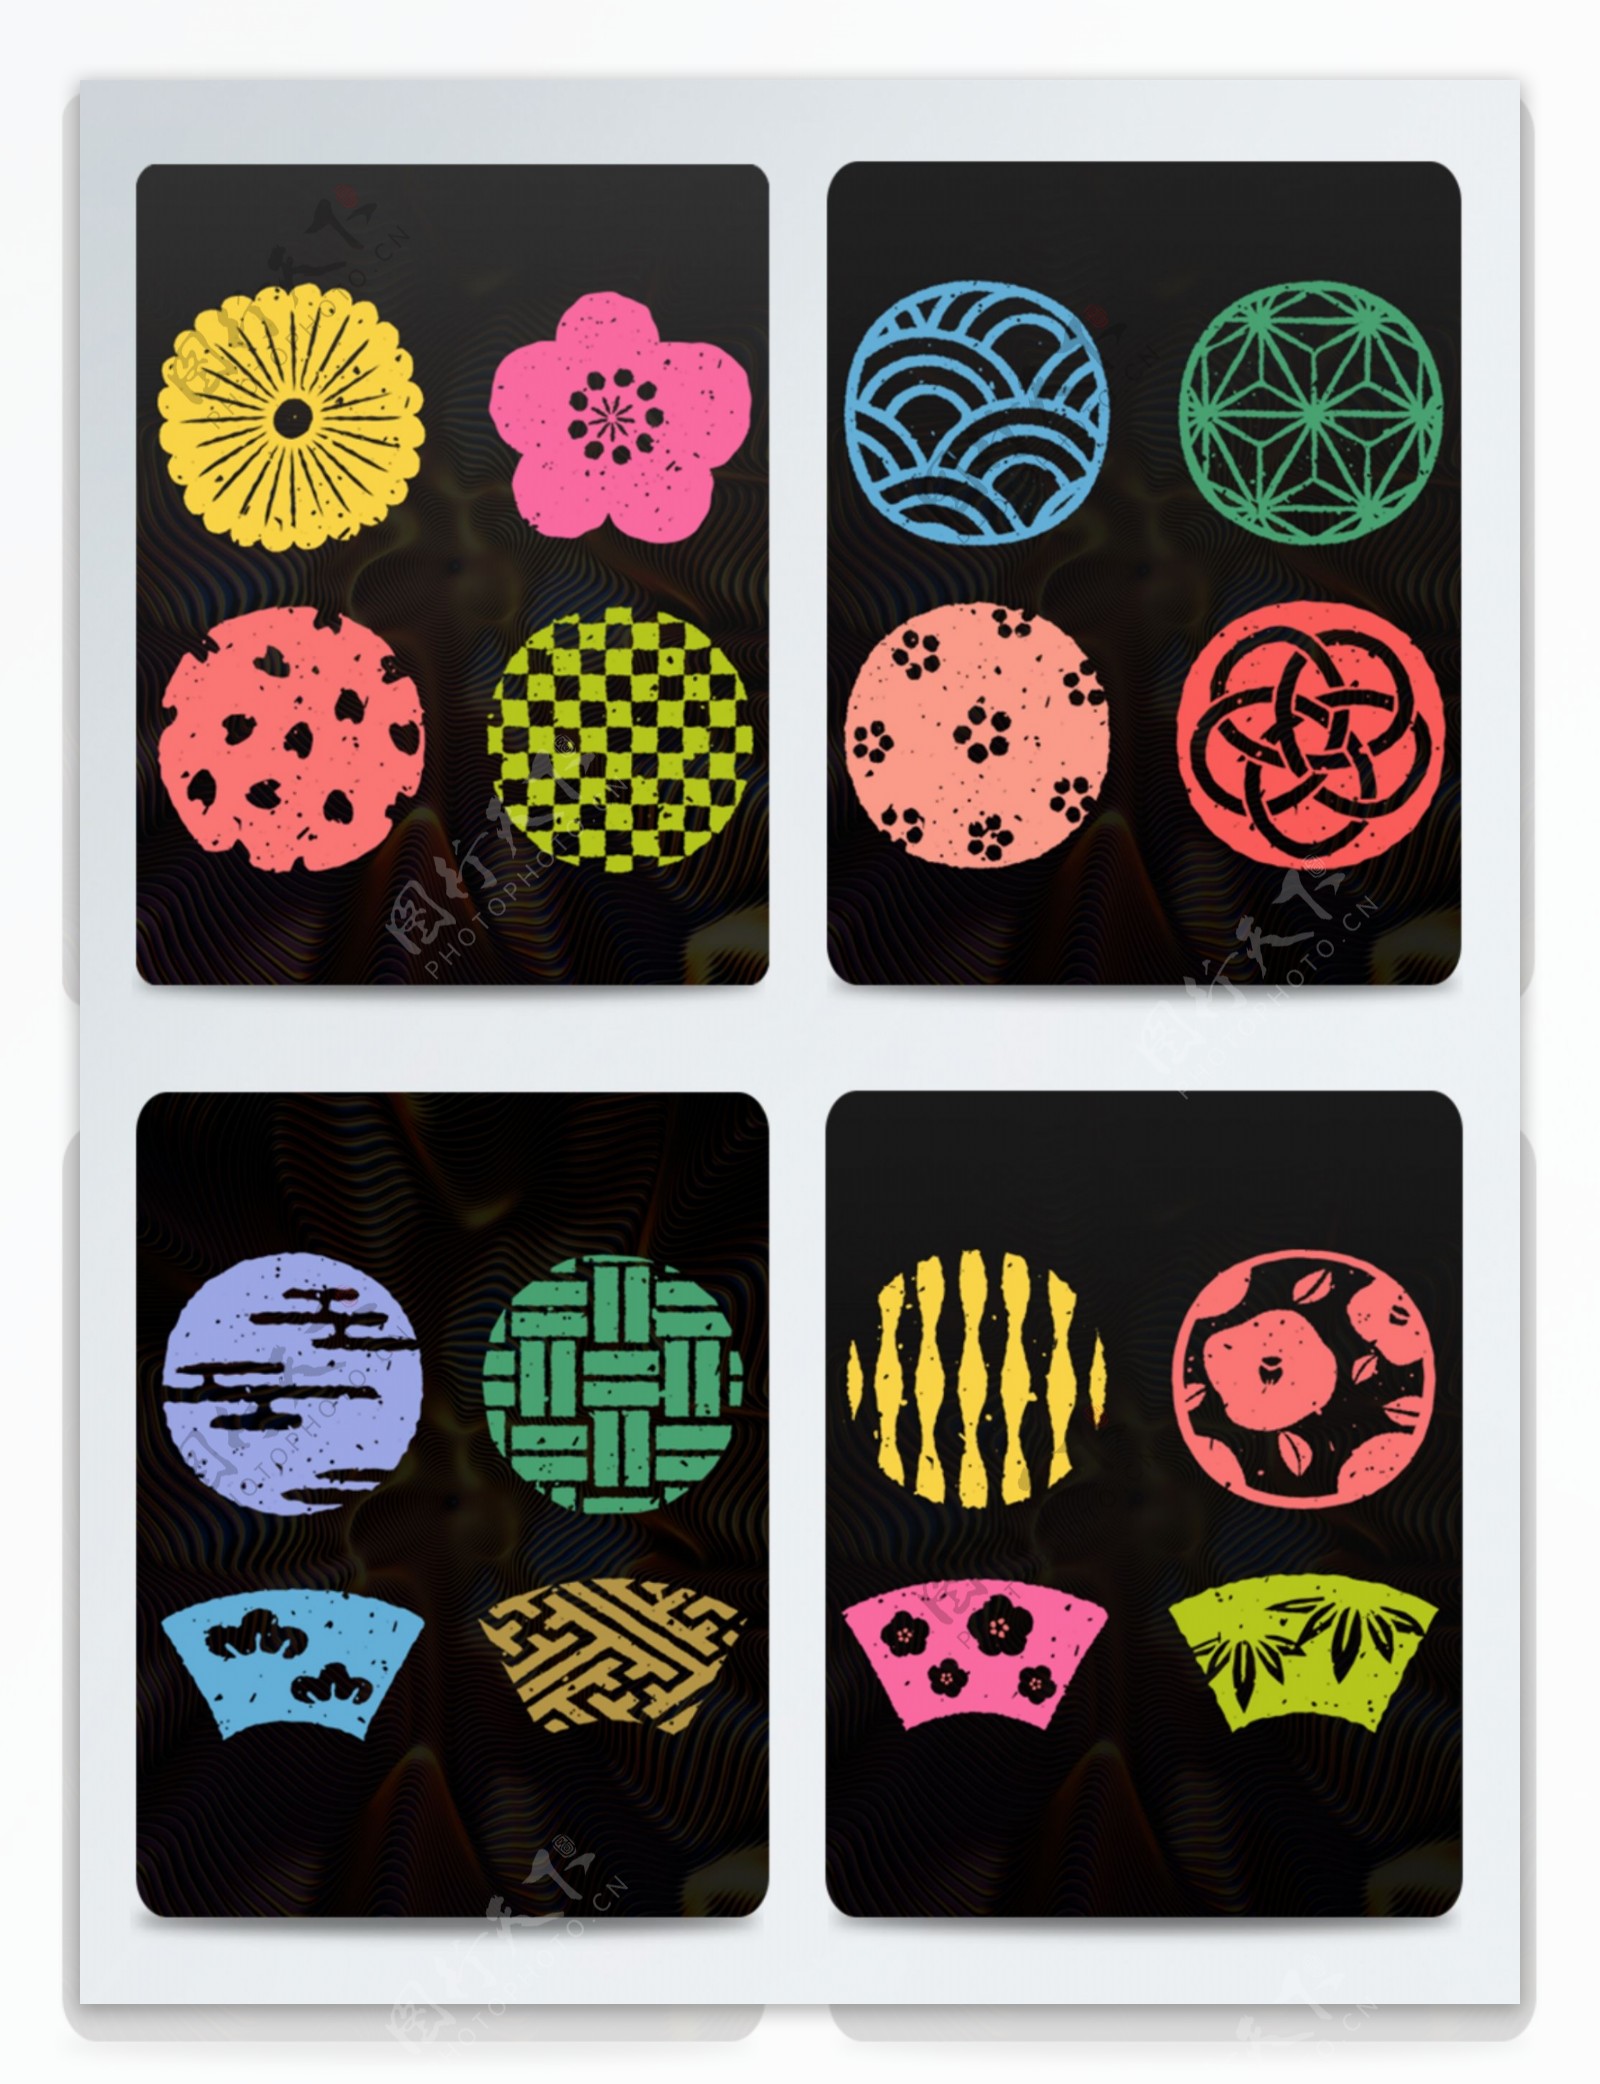 日式和风手绘风格邮票和柄装饰图案16种